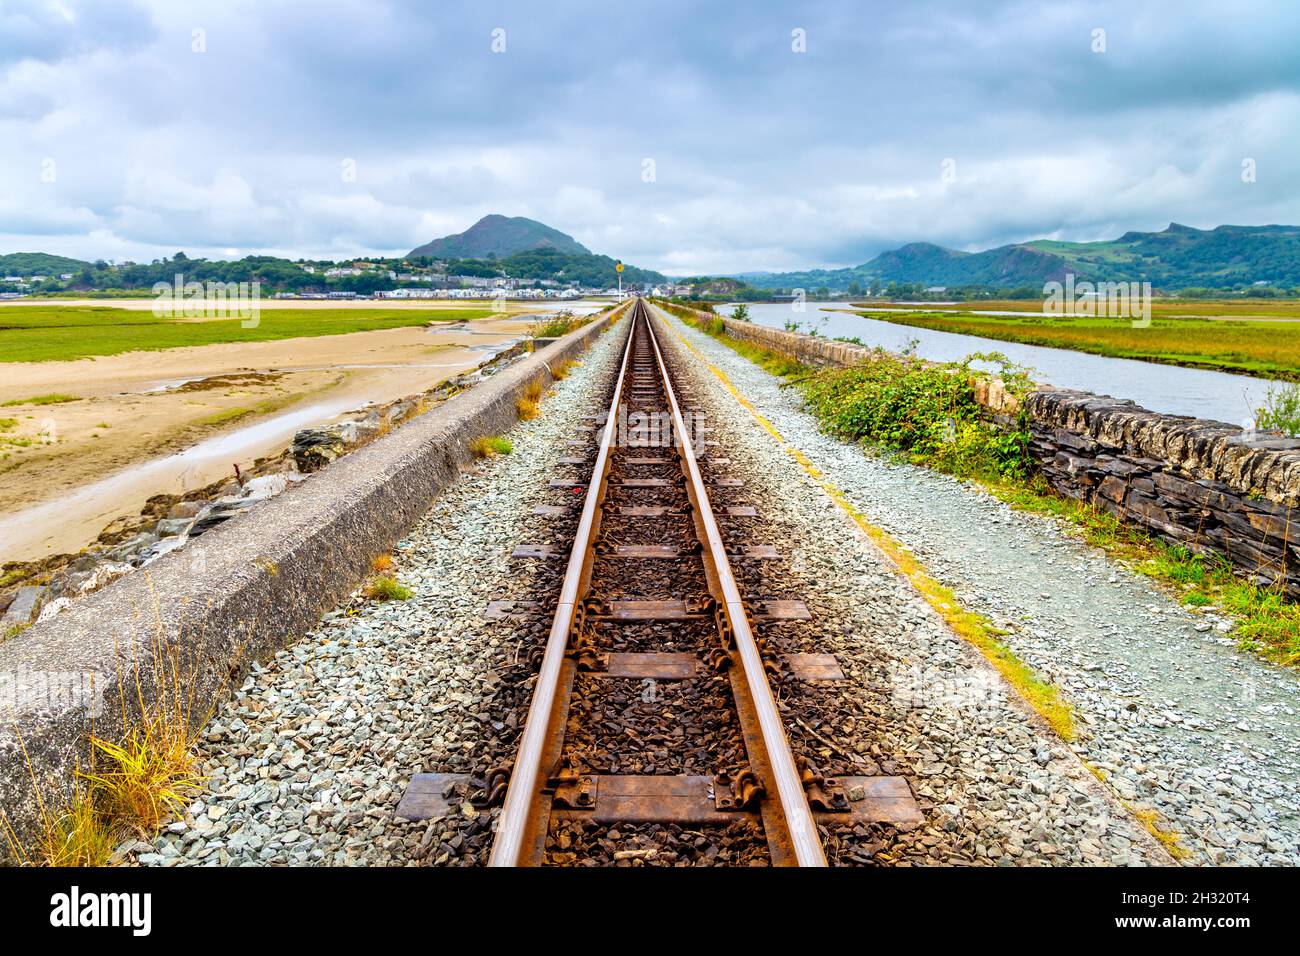 Ffestiniog Railway train tracks crossing the Porthmadog Cob (Canol ffordd Y Cob Porthmadog), Snowdonia, Wales, UK Stock Photo